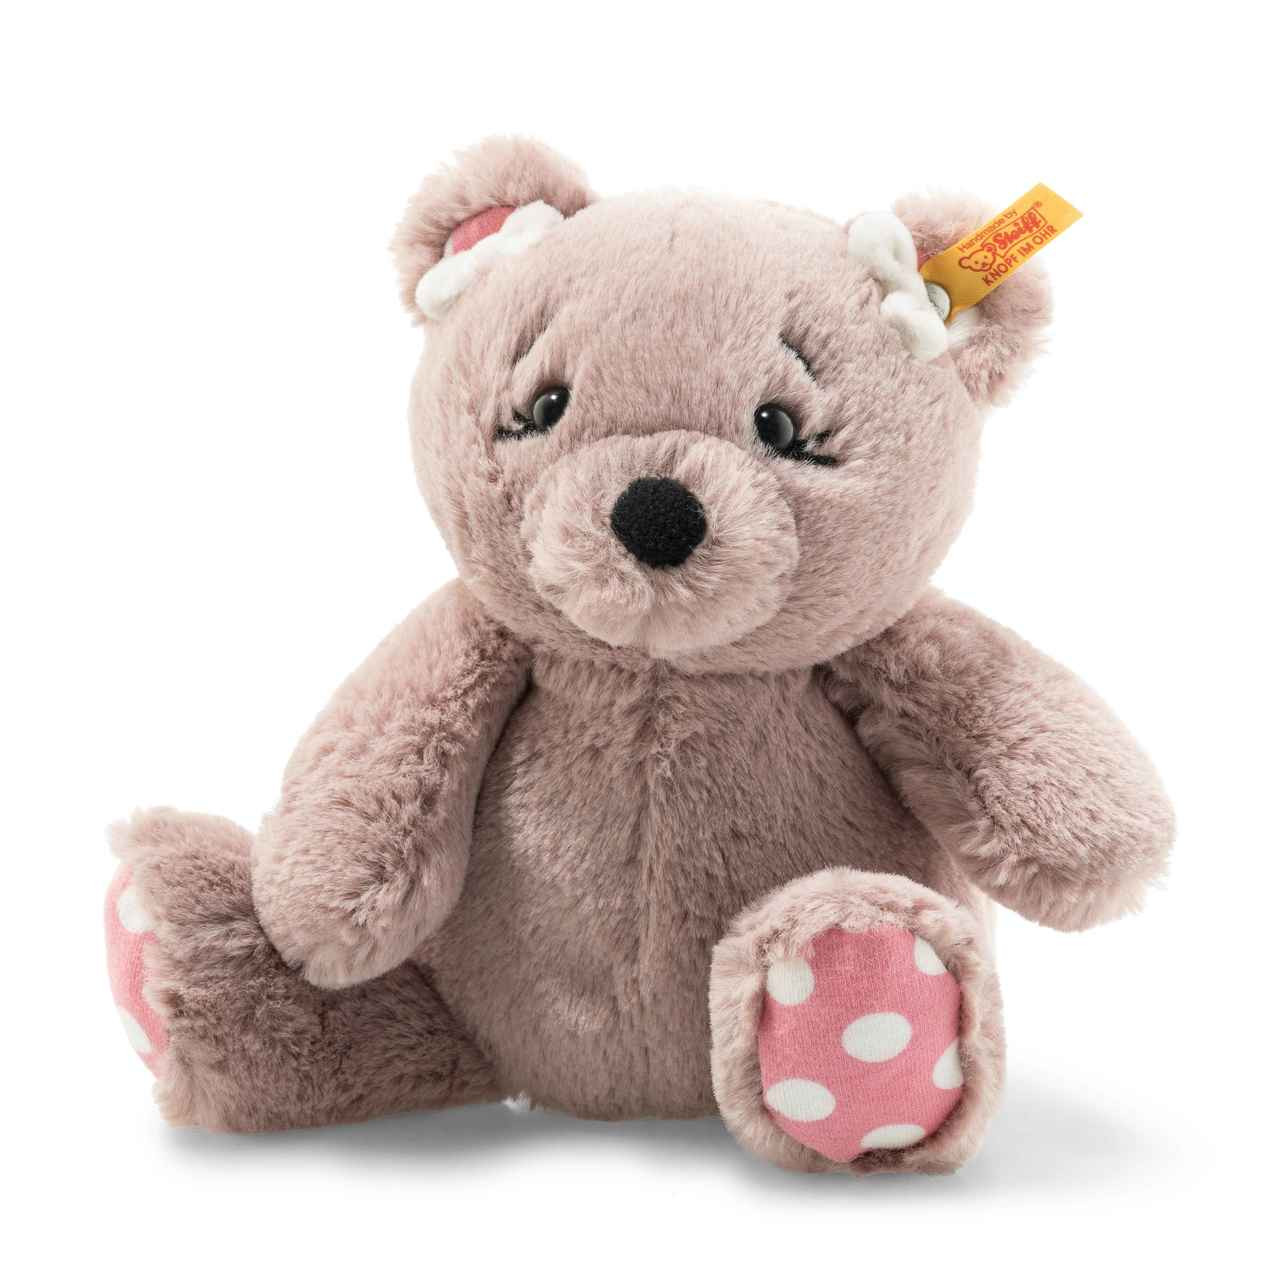 2018 teddy bear